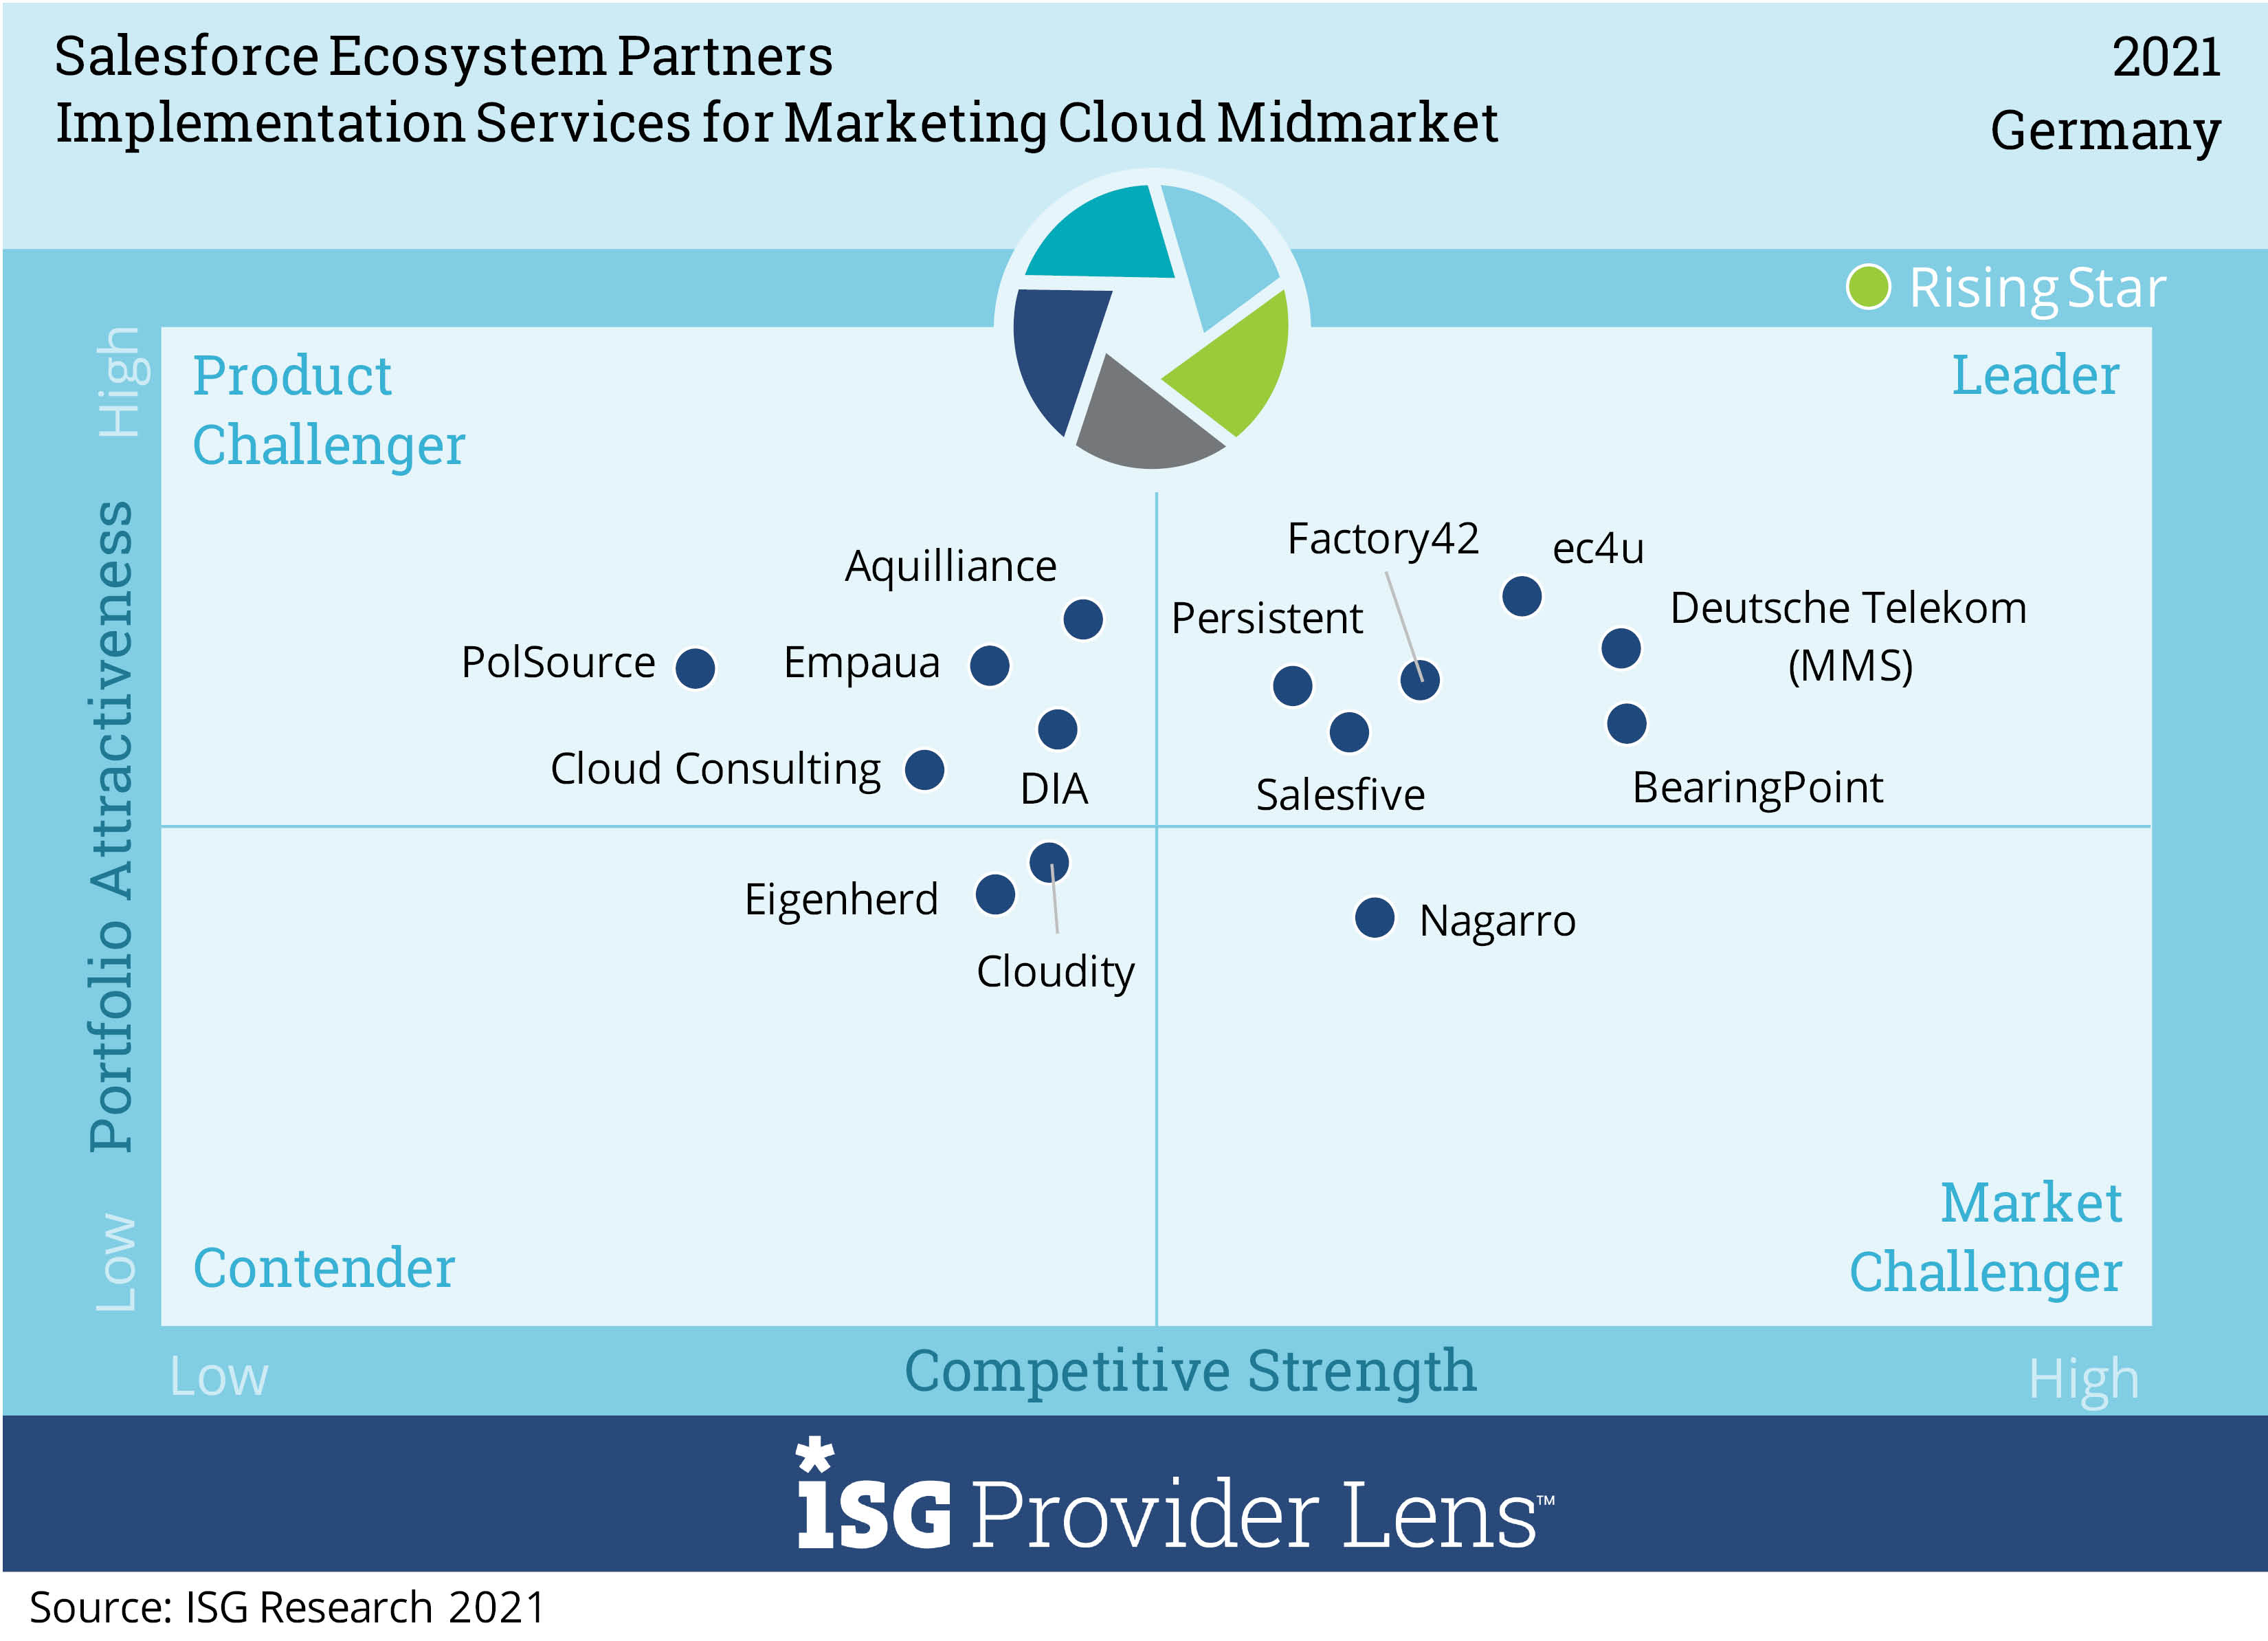 Implementation Services fpr Marketing Cloud Midmarket